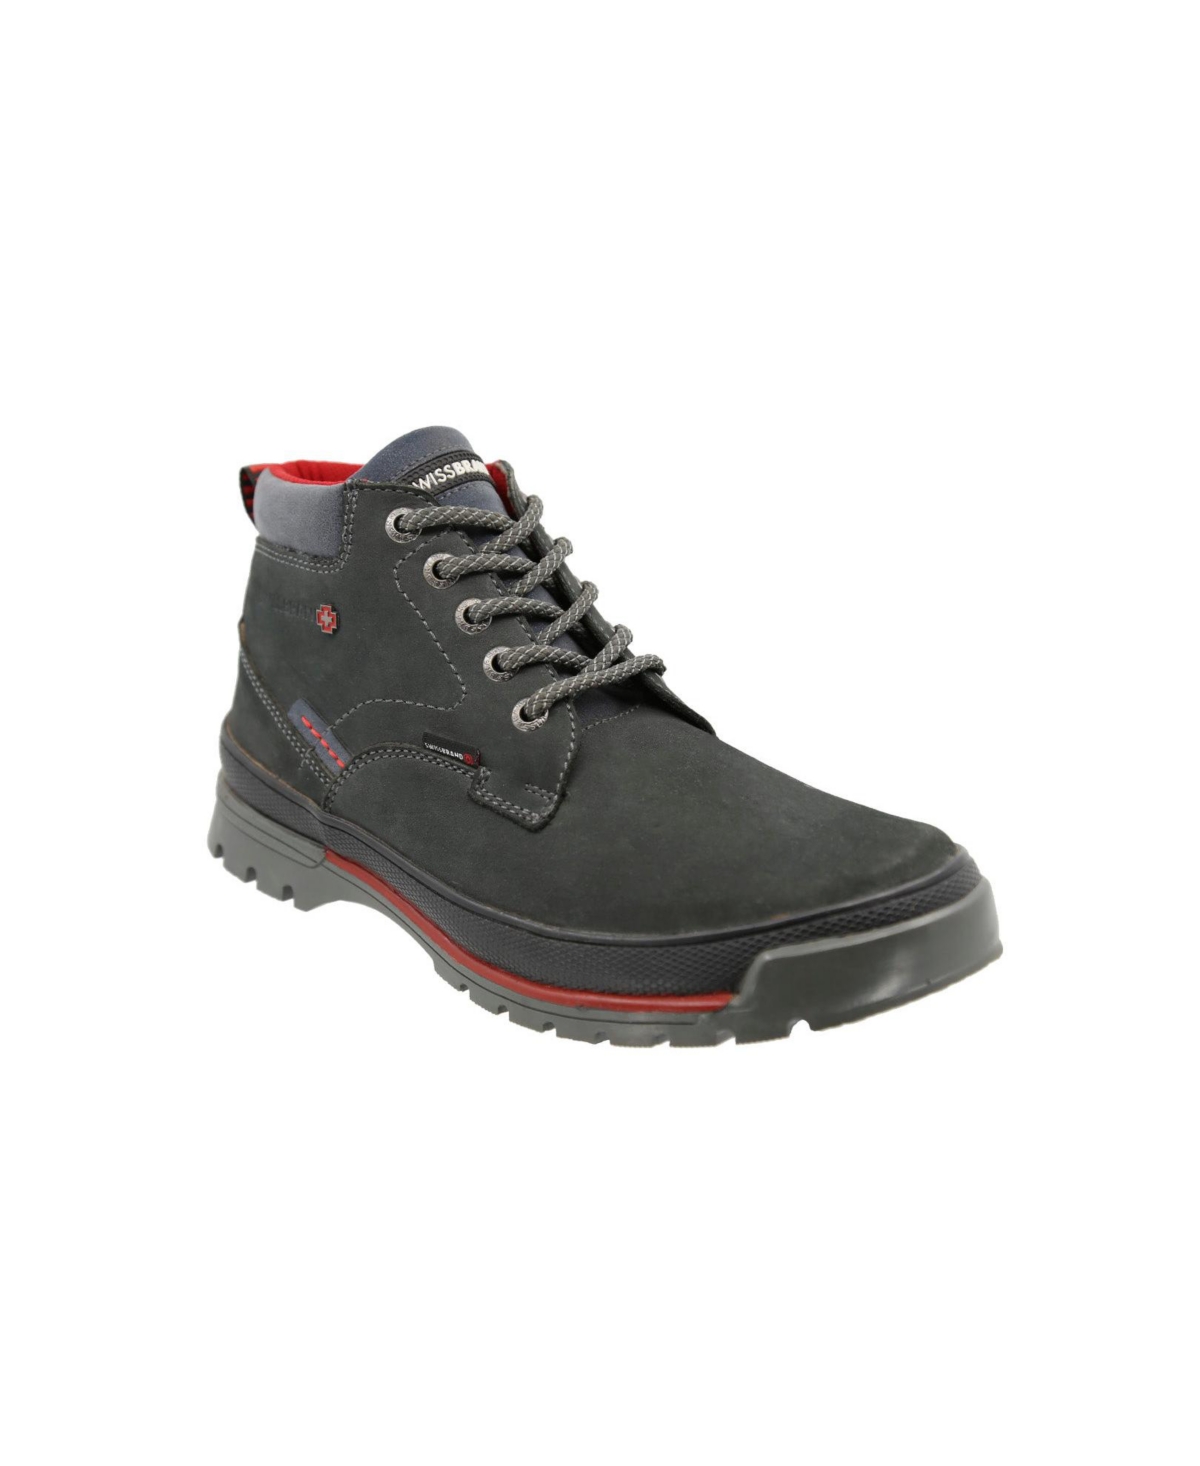 Men's Urban Boot Grisones Grey 336 - Grey